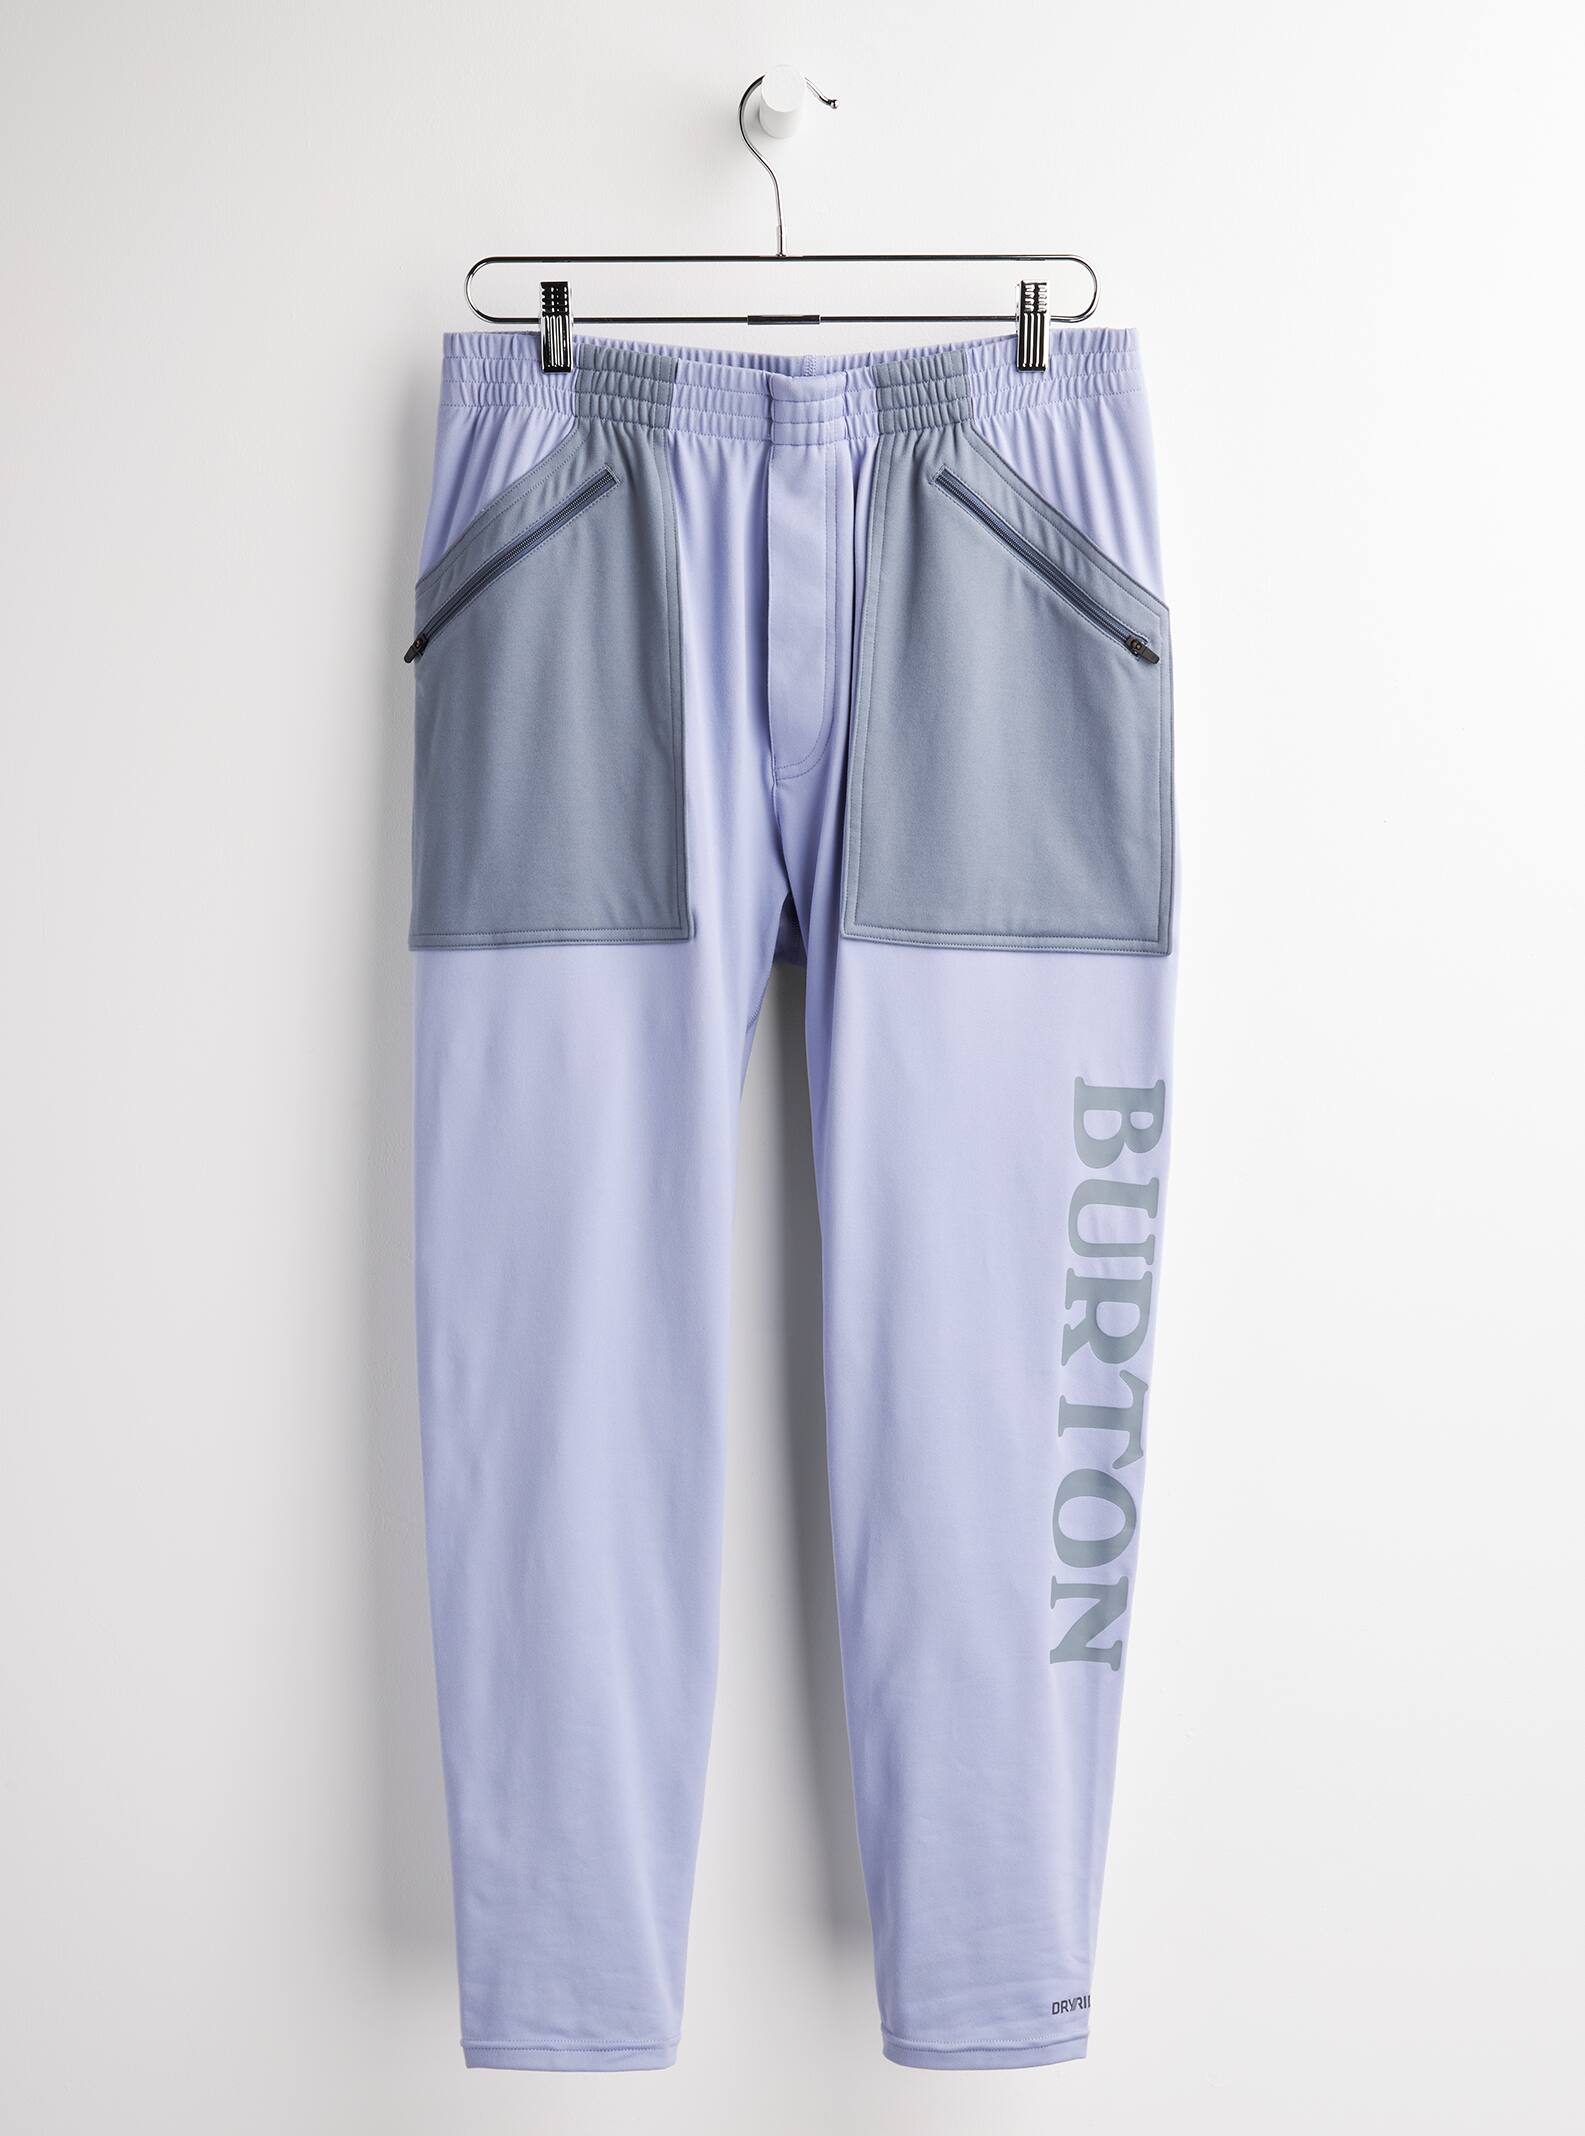 Burton - Pantalon sous-vêtement intermédiaire Stash homme, XXL